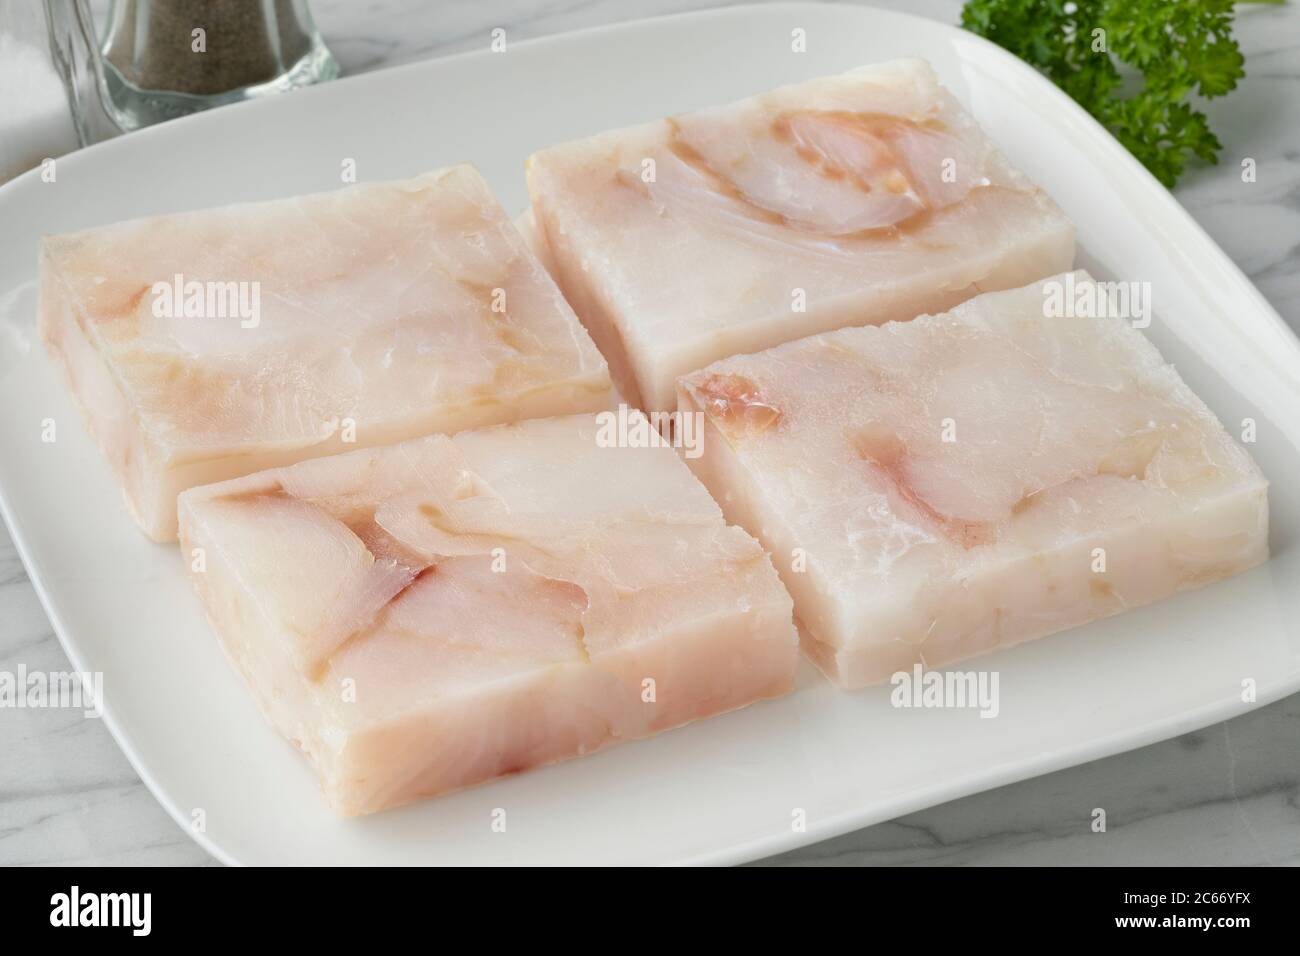 Plato con filetes de bacalao congelados para descongelar como ingrediente para cocinar Foto de stock